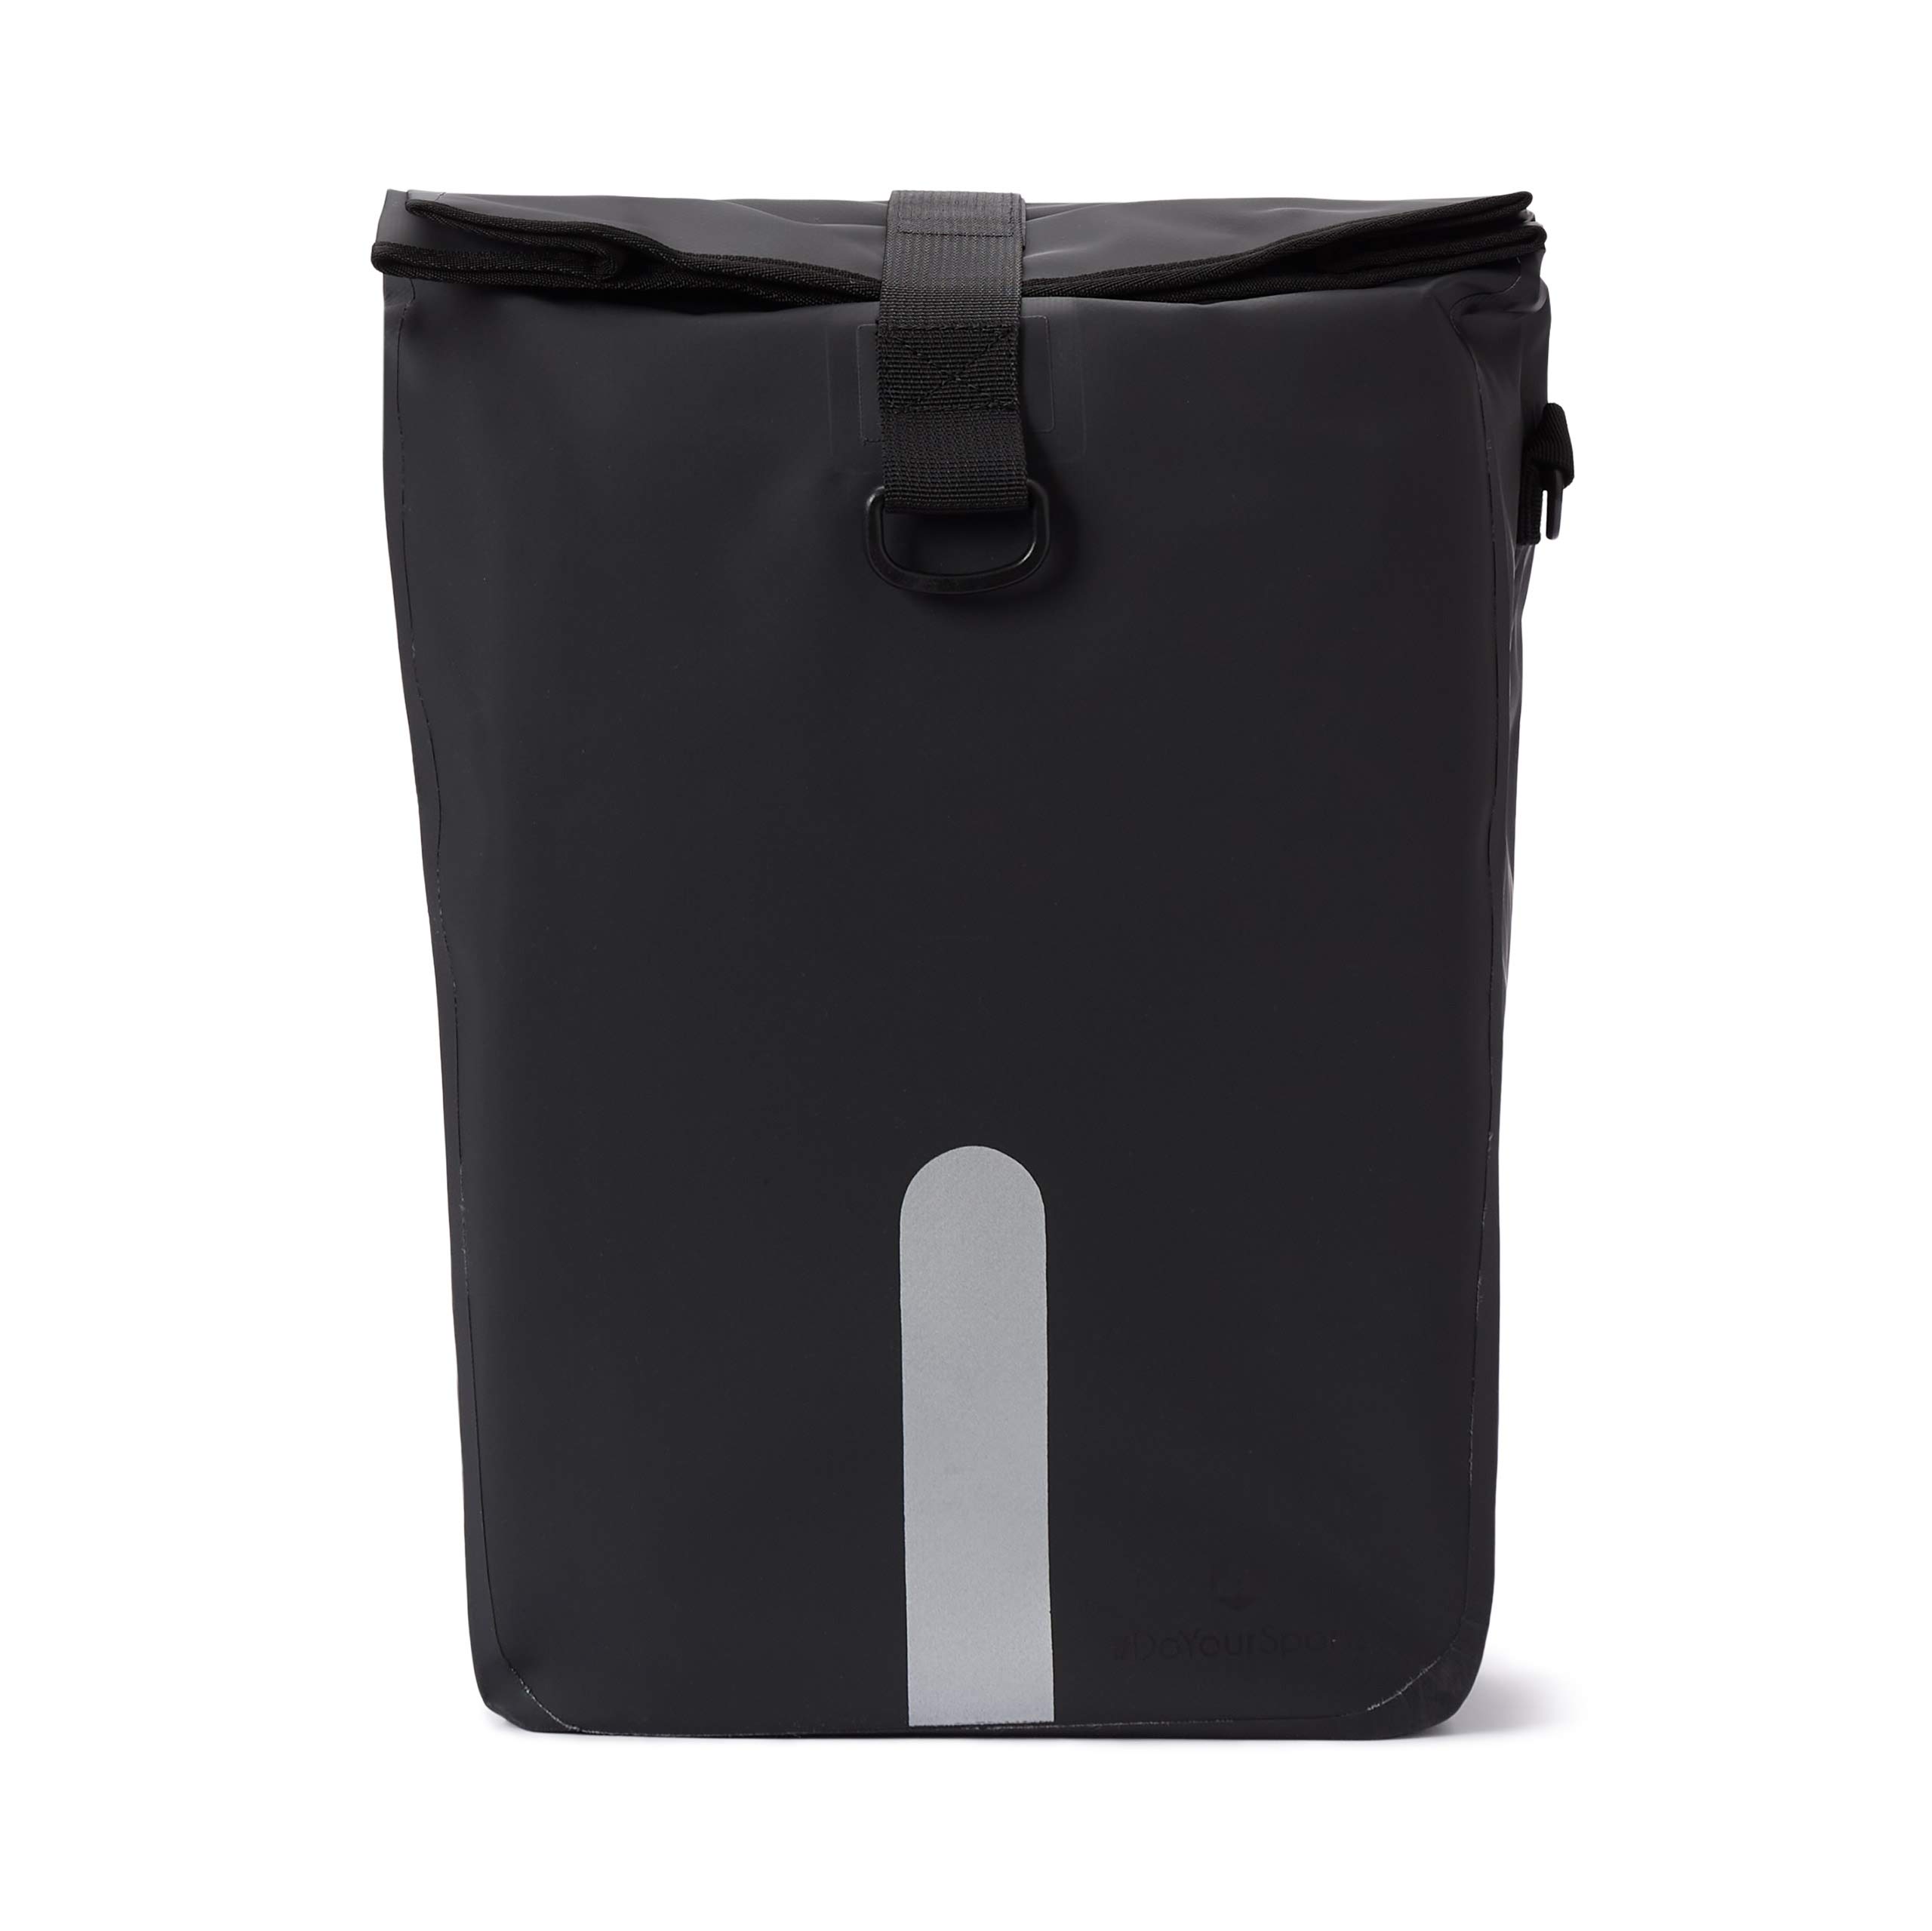 #DoYourOutdoor 3in1 Hinterradtasche mit praktischem Schnellverbindungssystem für Gepäckträger | Wasserdicht & Reflektierend - 21 Liter Rolltop-Fahrradtasche mit Schultergurt, Tragegriff - schwarz